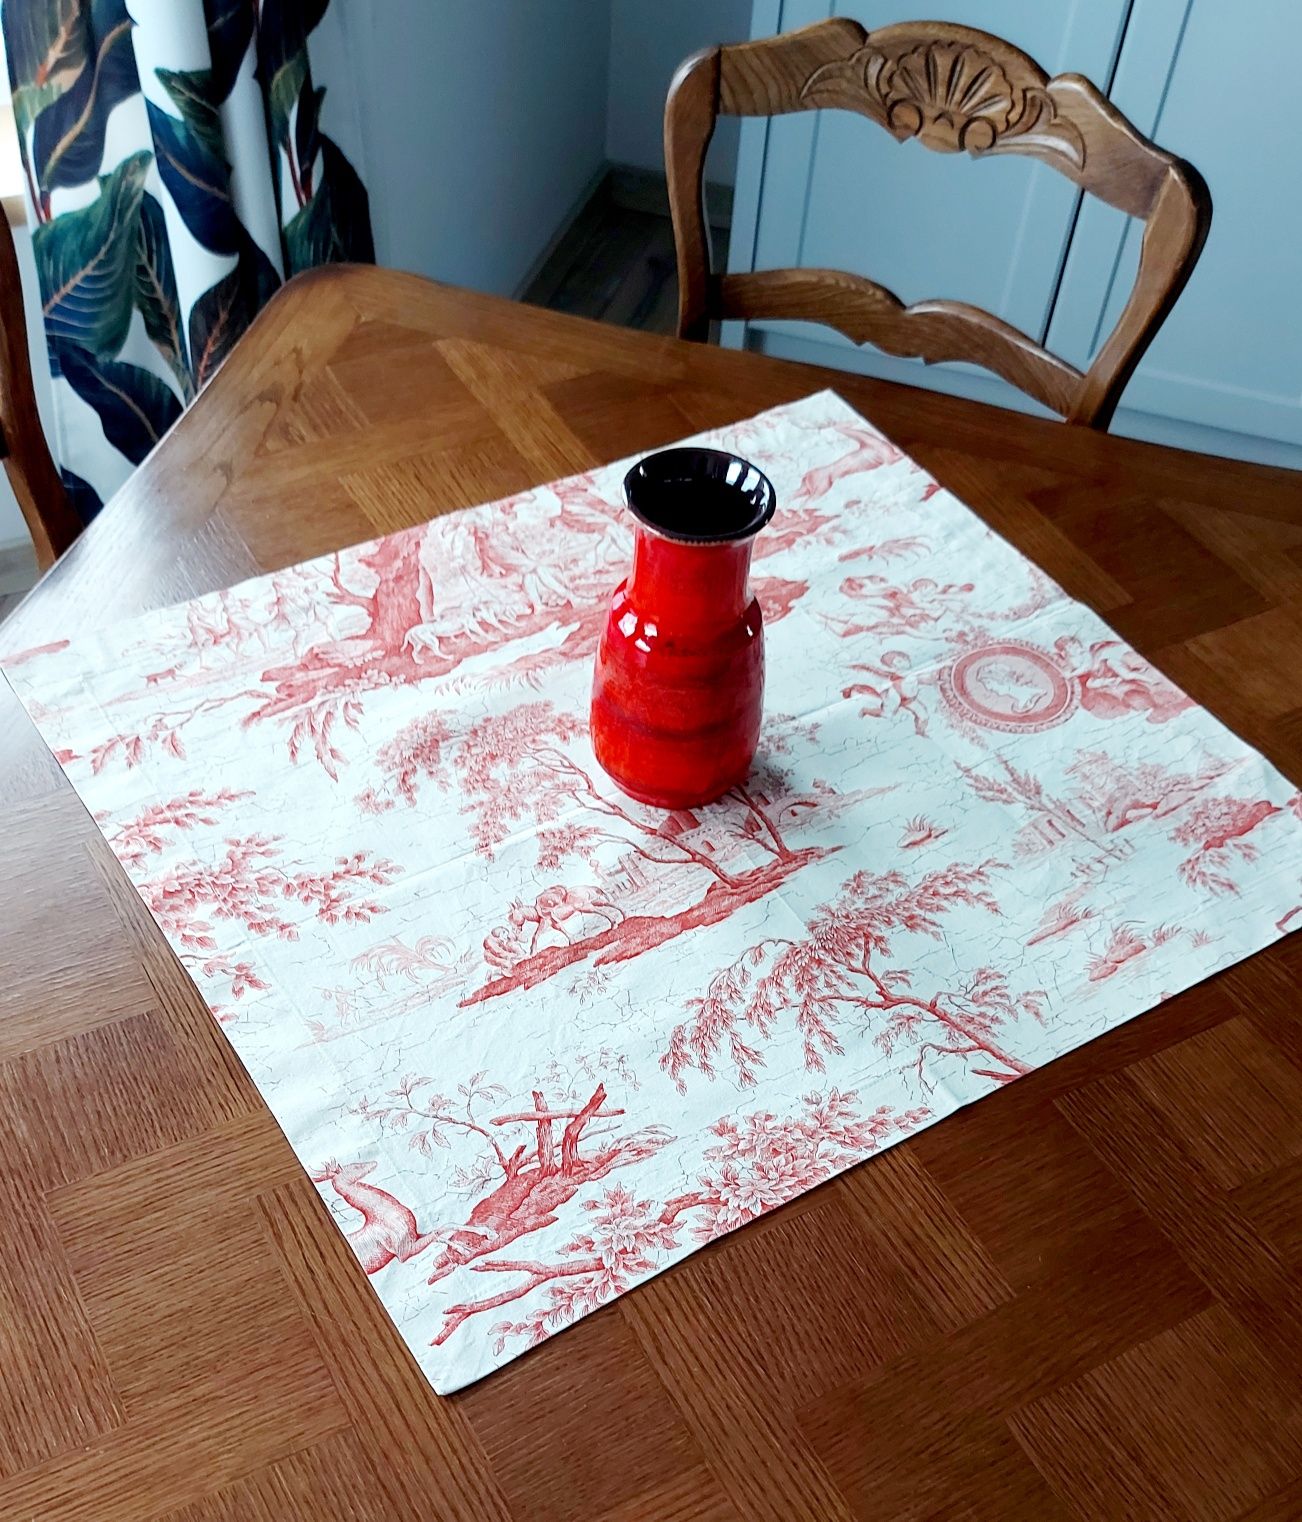 Serweta gruba bawełna scenki angielskie kremowa czerwona ruda 69 x 61